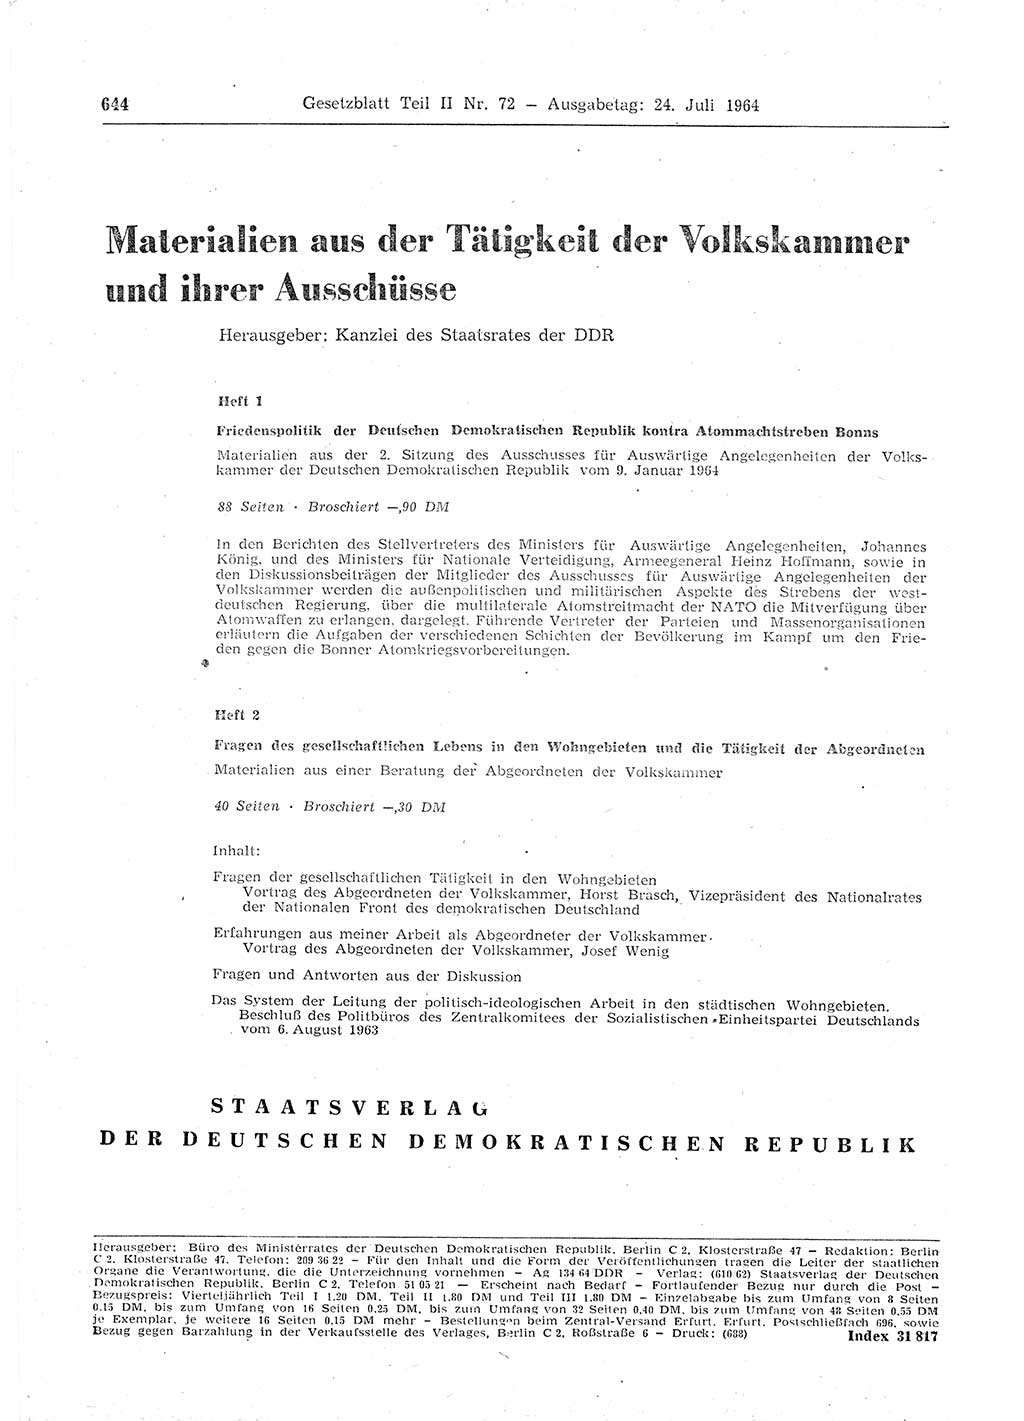 Gesetzblatt (GBl.) der Deutschen Demokratischen Republik (DDR) Teil ⅠⅠ 1964, Seite 644 (GBl. DDR ⅠⅠ 1964, S. 644)